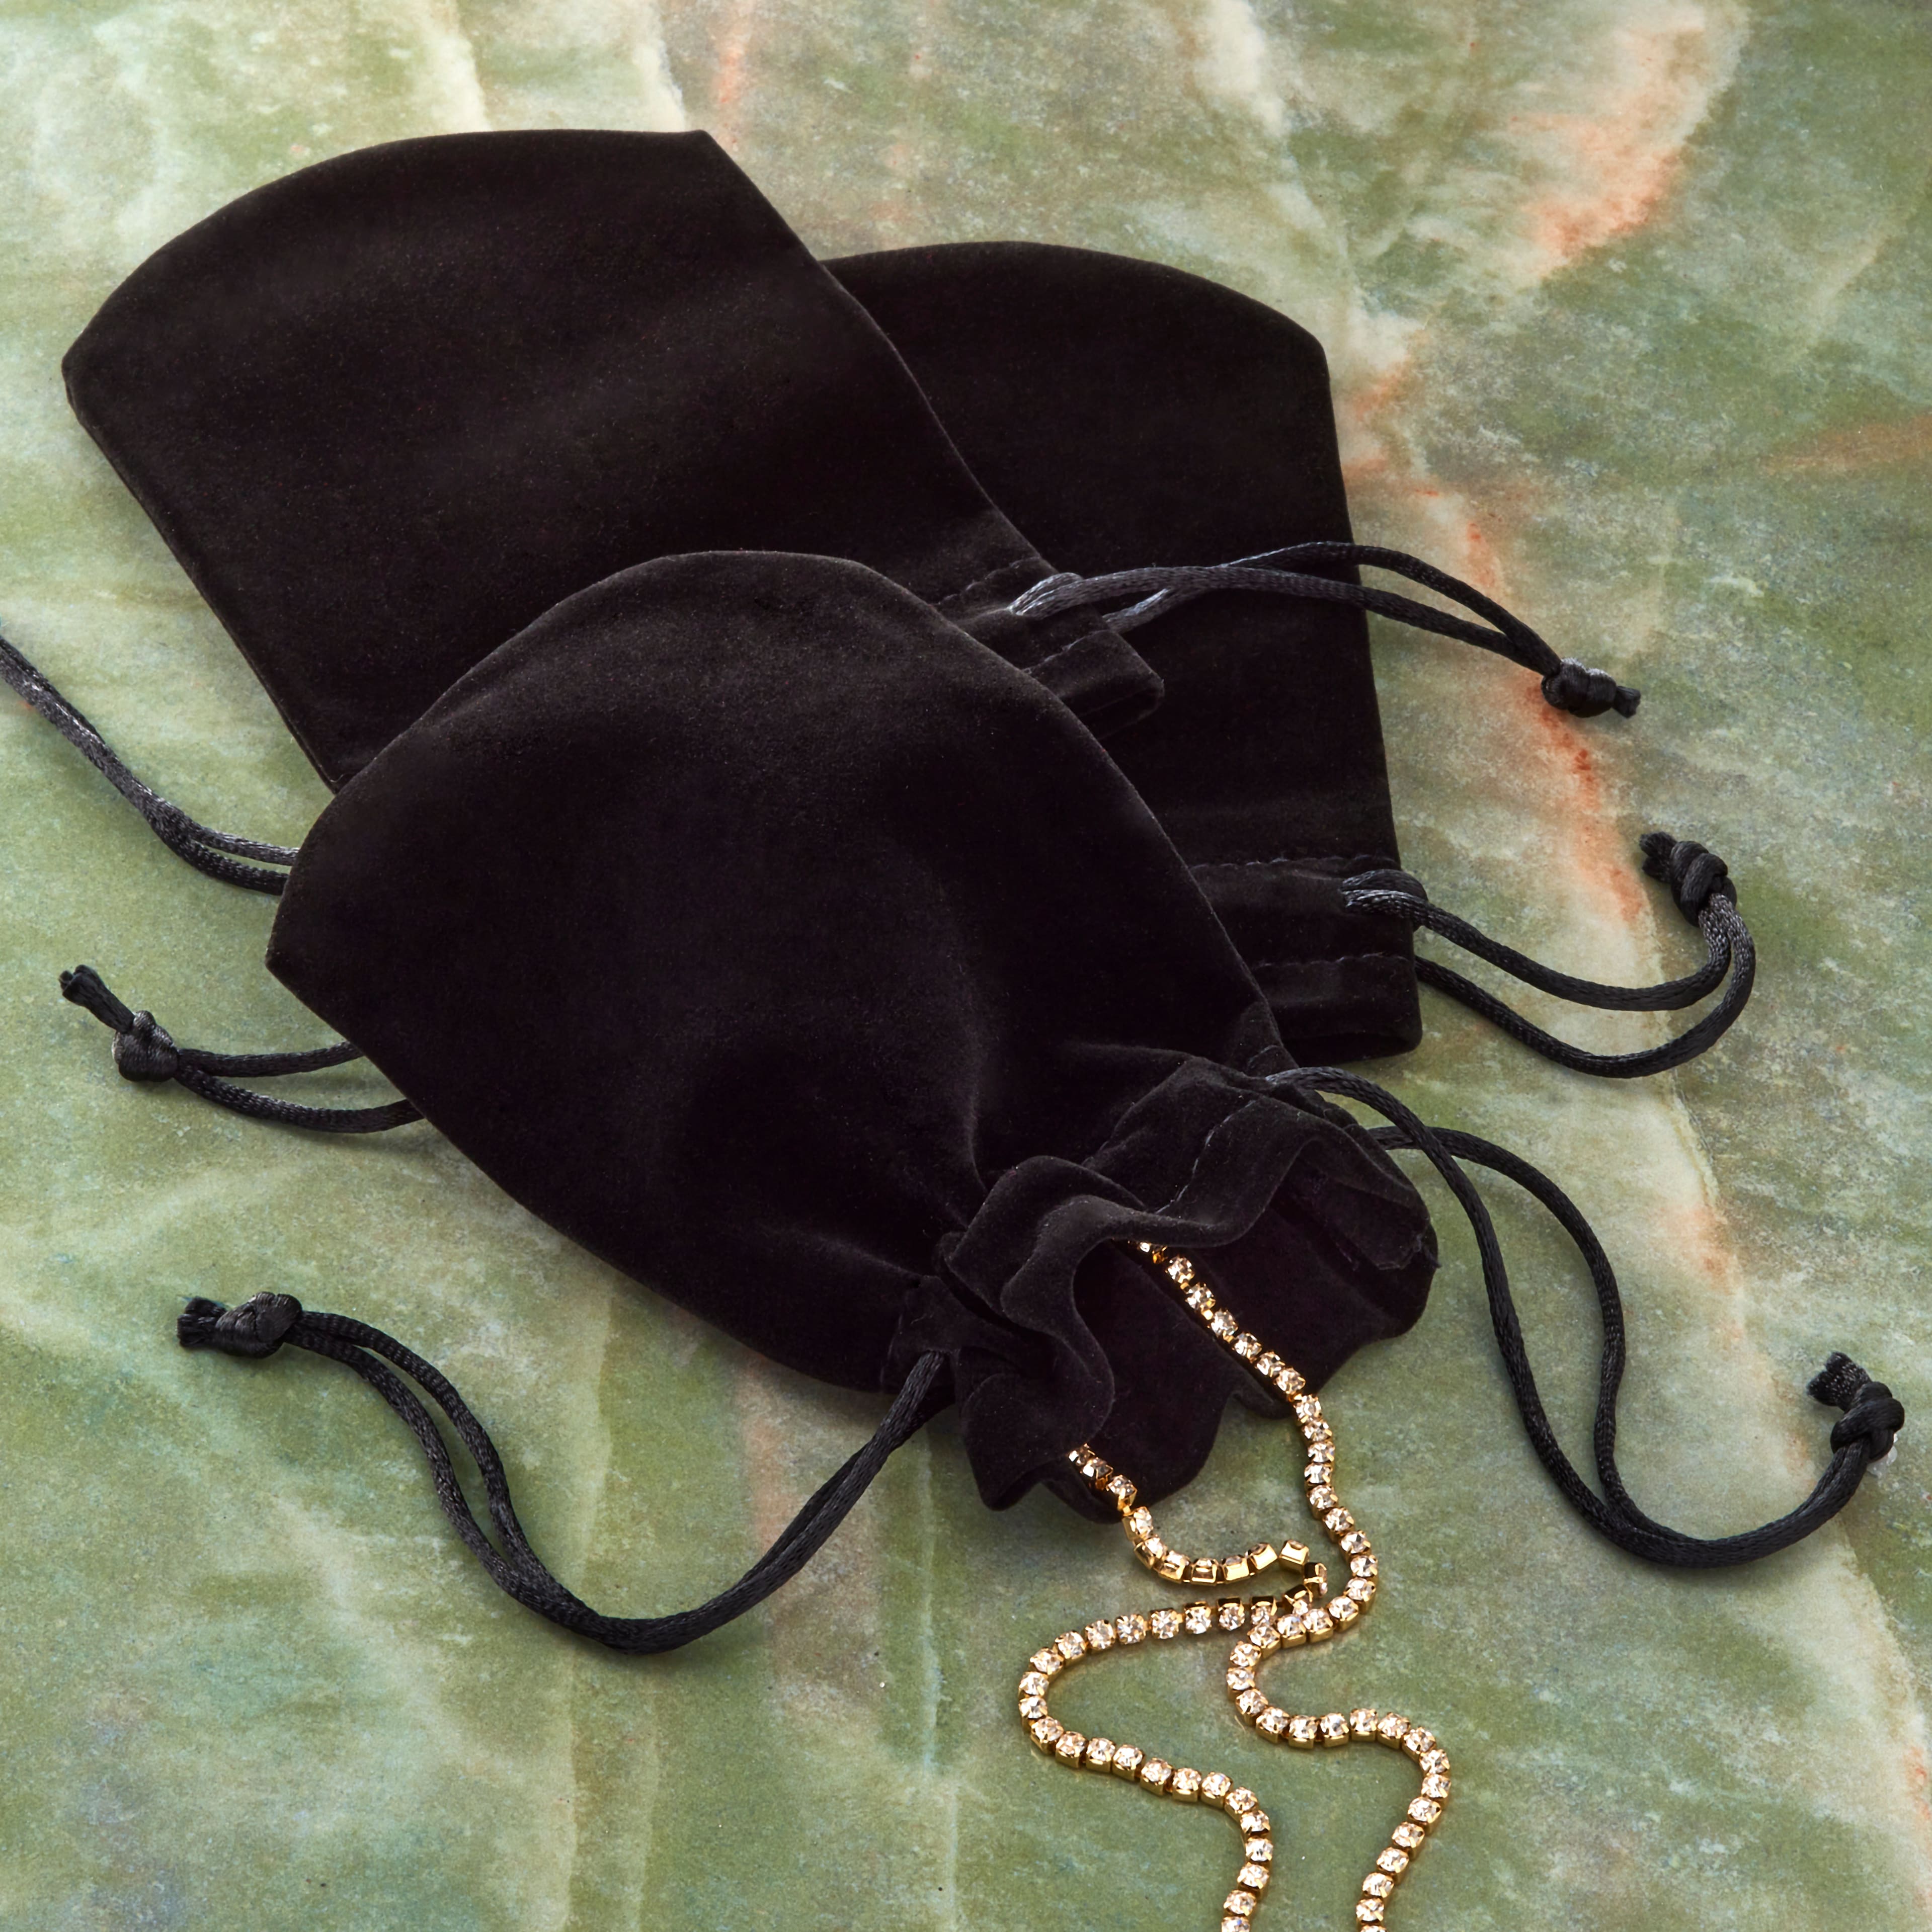 8 Pcs Black Velvet Bags with Drawstrings 7.87×9.72 Large Velvet